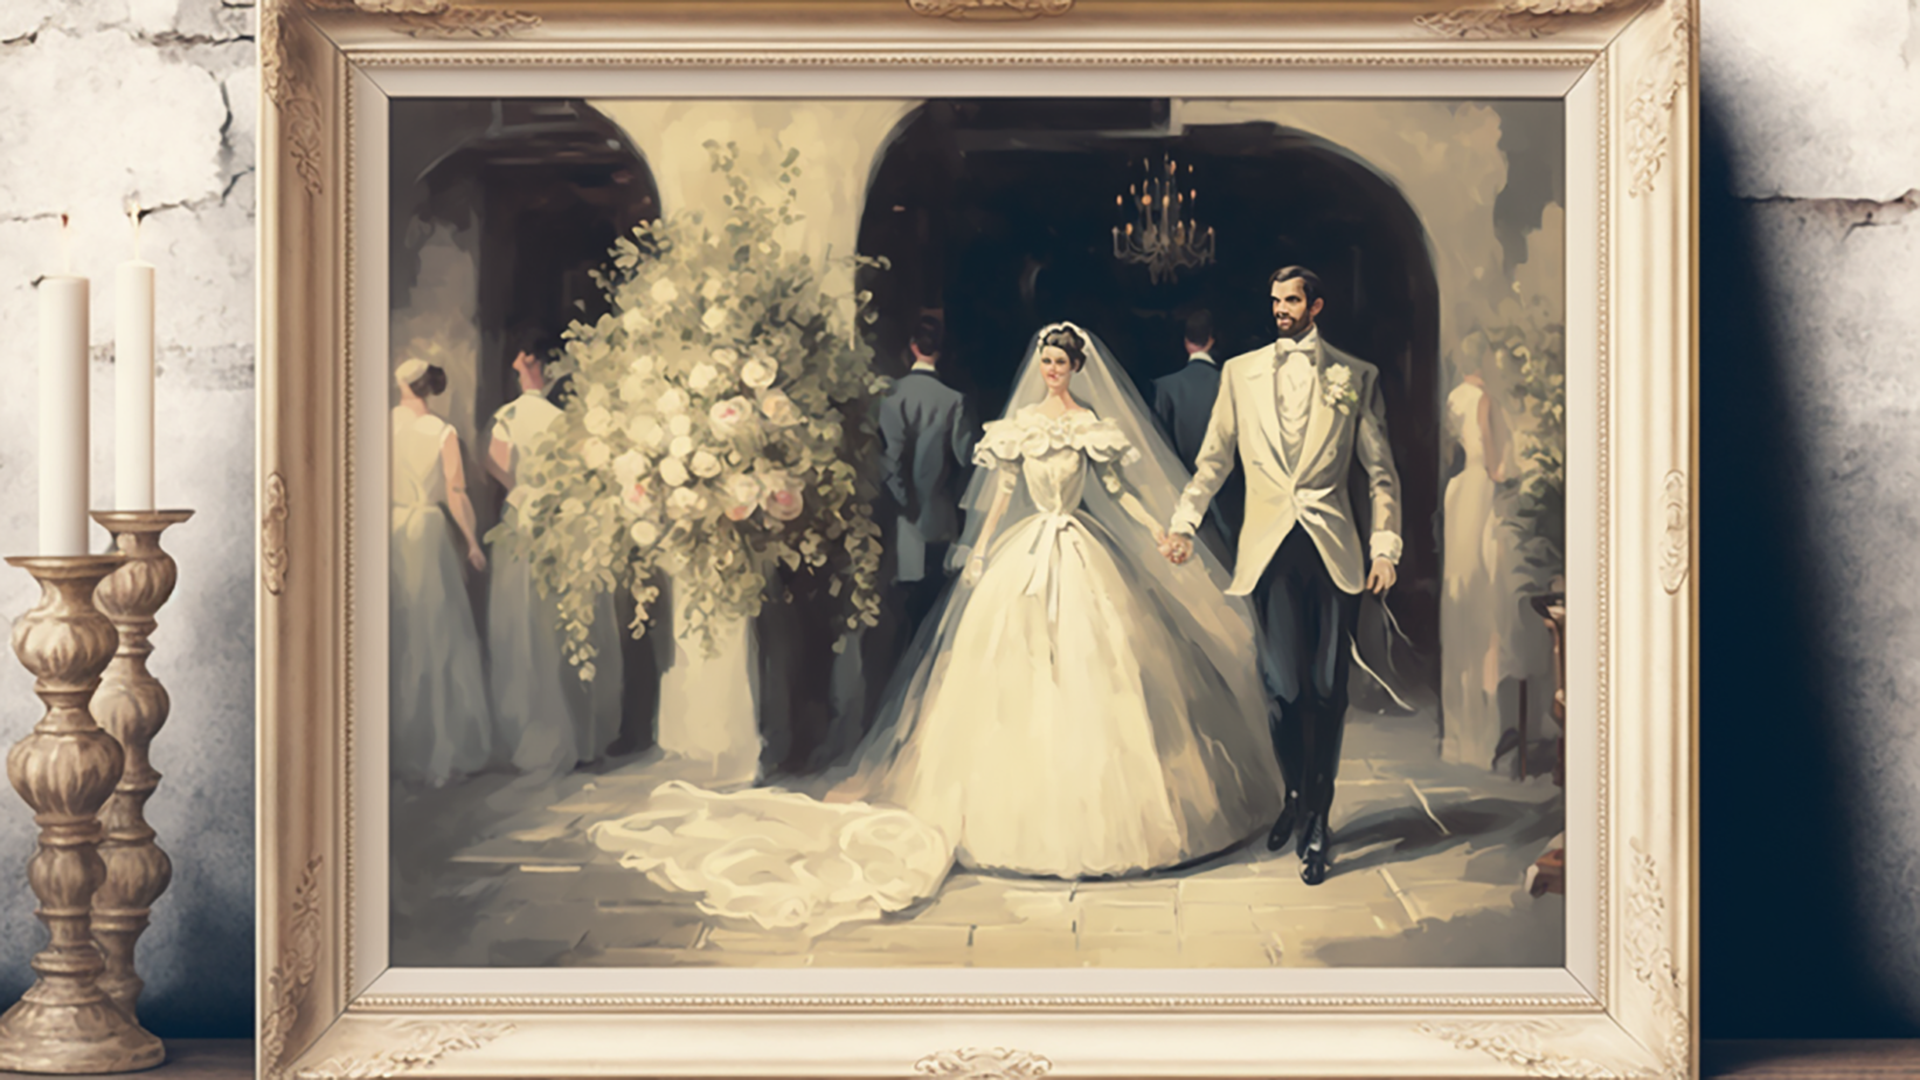 婚礼照片浪漫油画风格背景图片